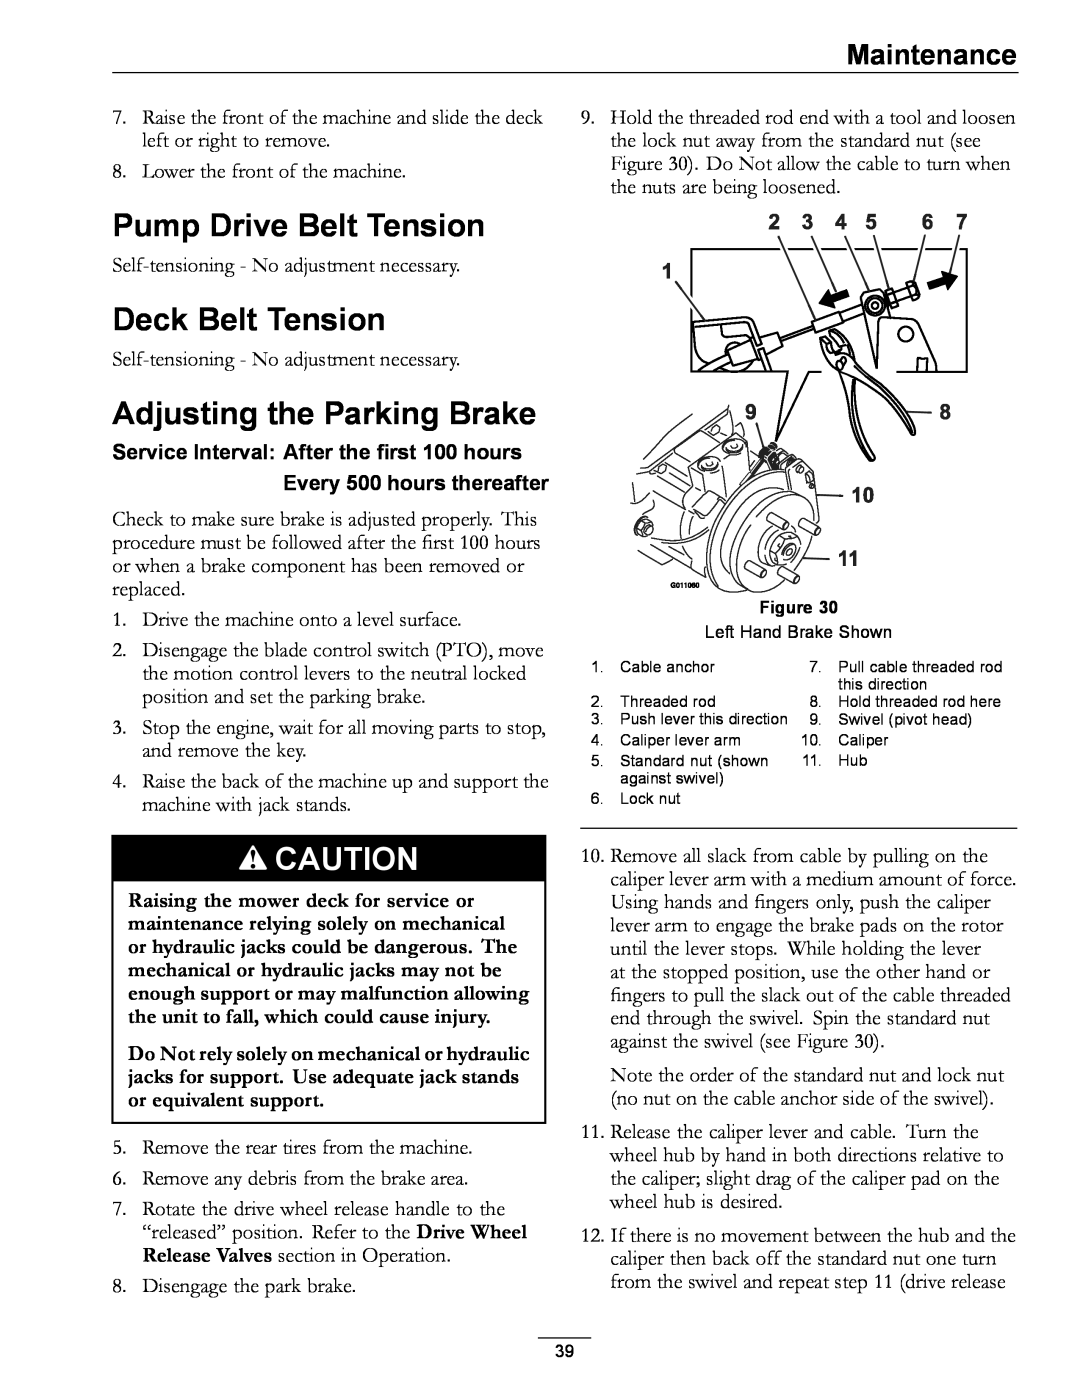 Exmark 4500-507 manual Pump Drive Belt Tension, Deck Belt Tension, Adjusting the Parking Brake, Maintenance 